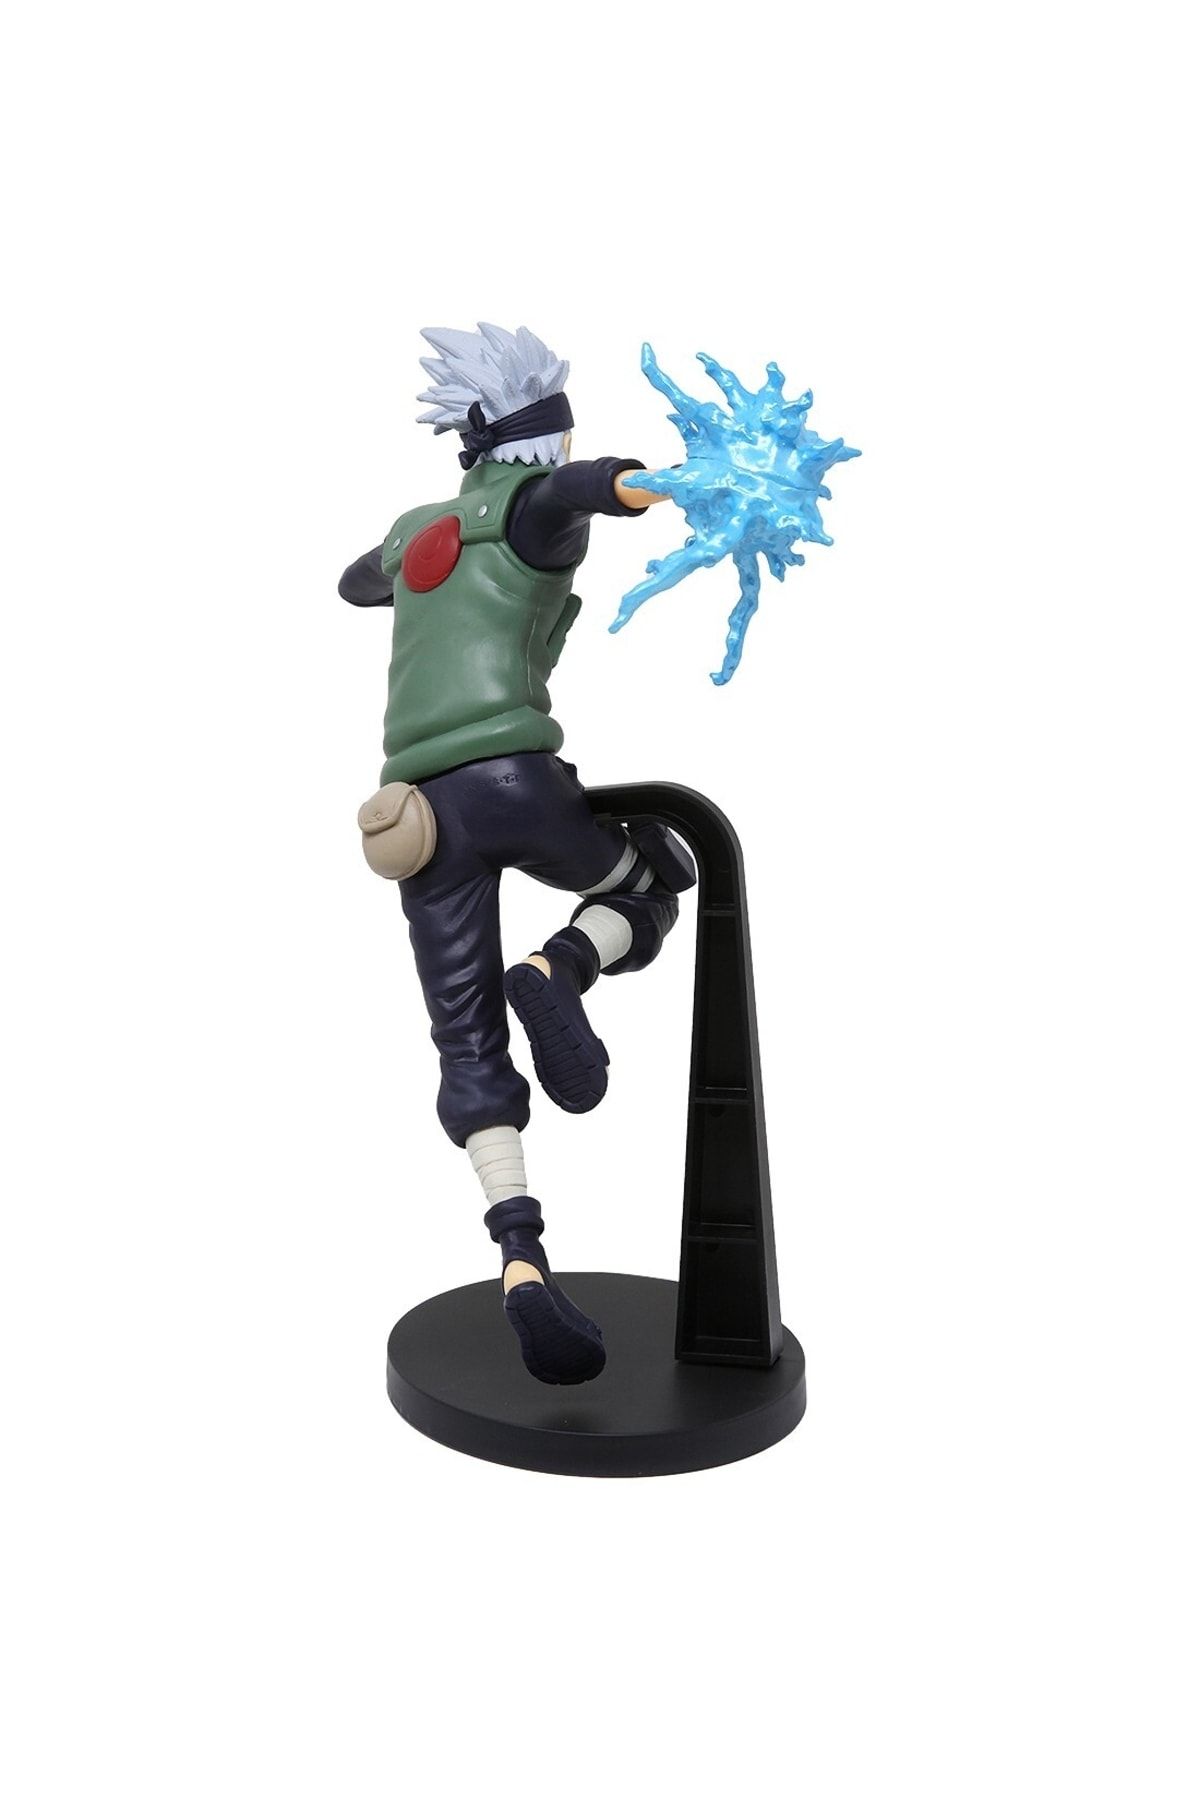 Naruto Shippuden Hatake Kakashi Vibration Stars 8.5 Figurine Action Figure  Toy